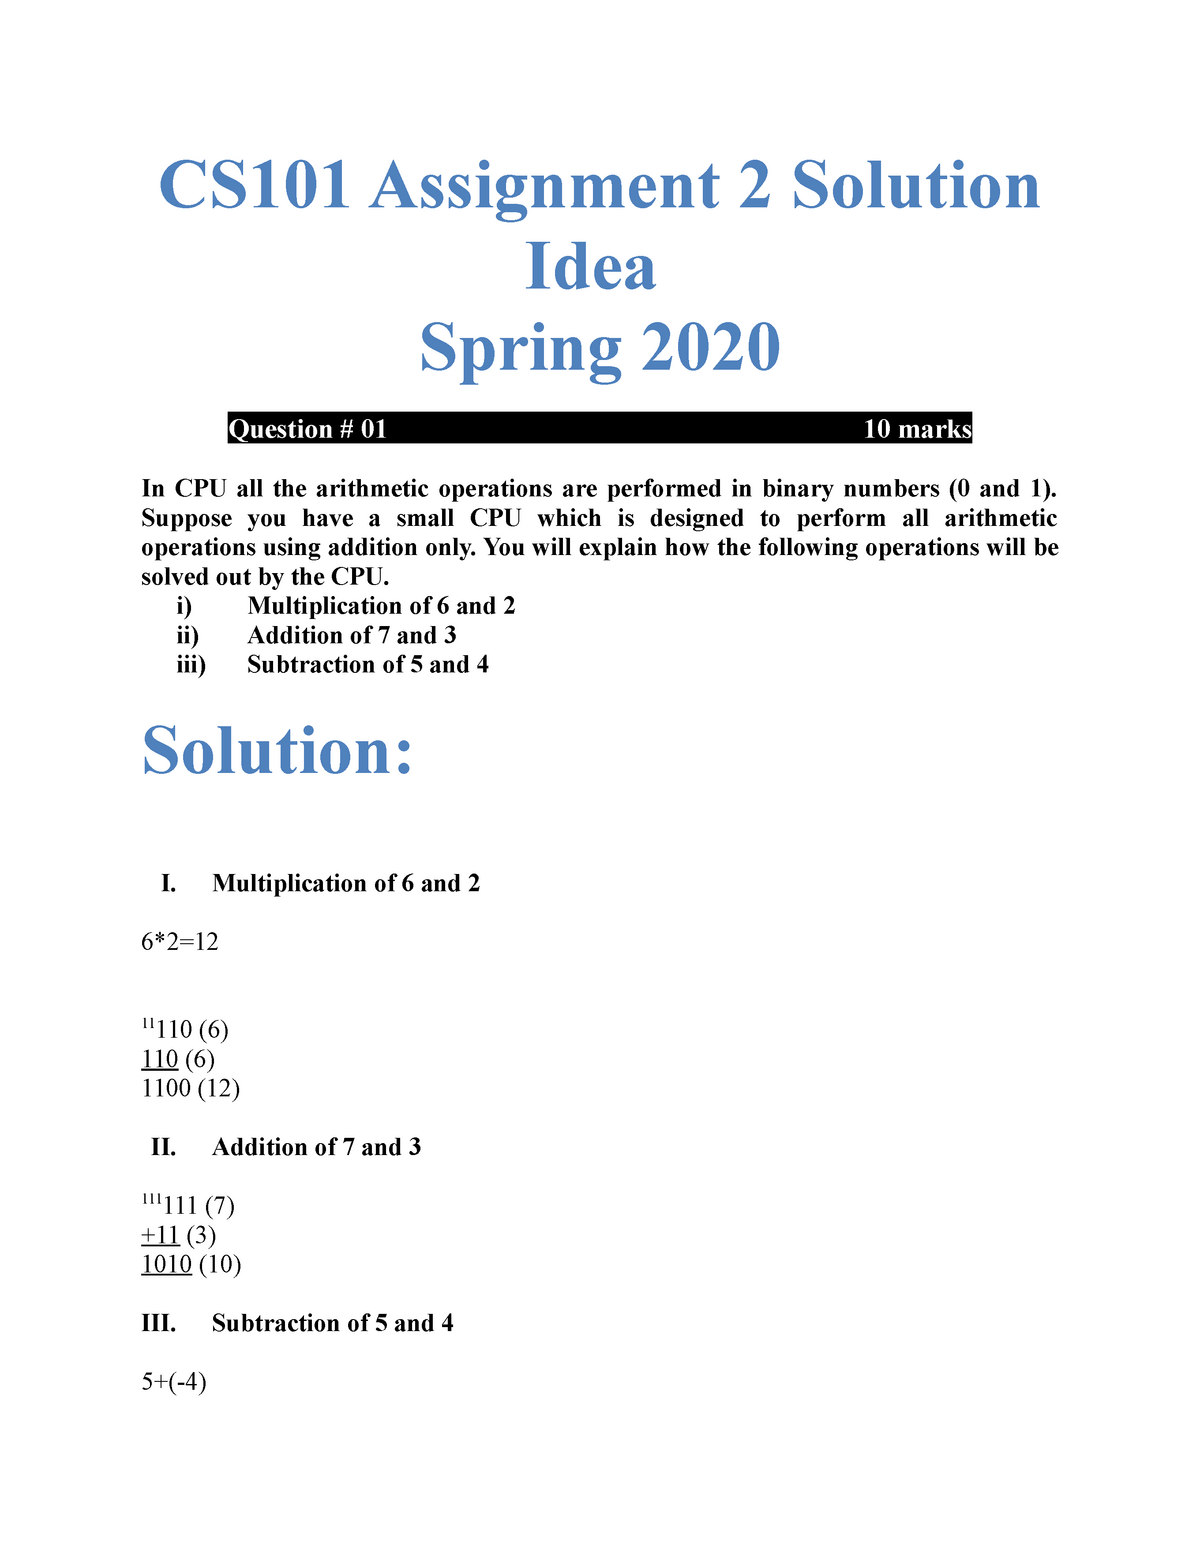 cs101 assignment no 2 solution